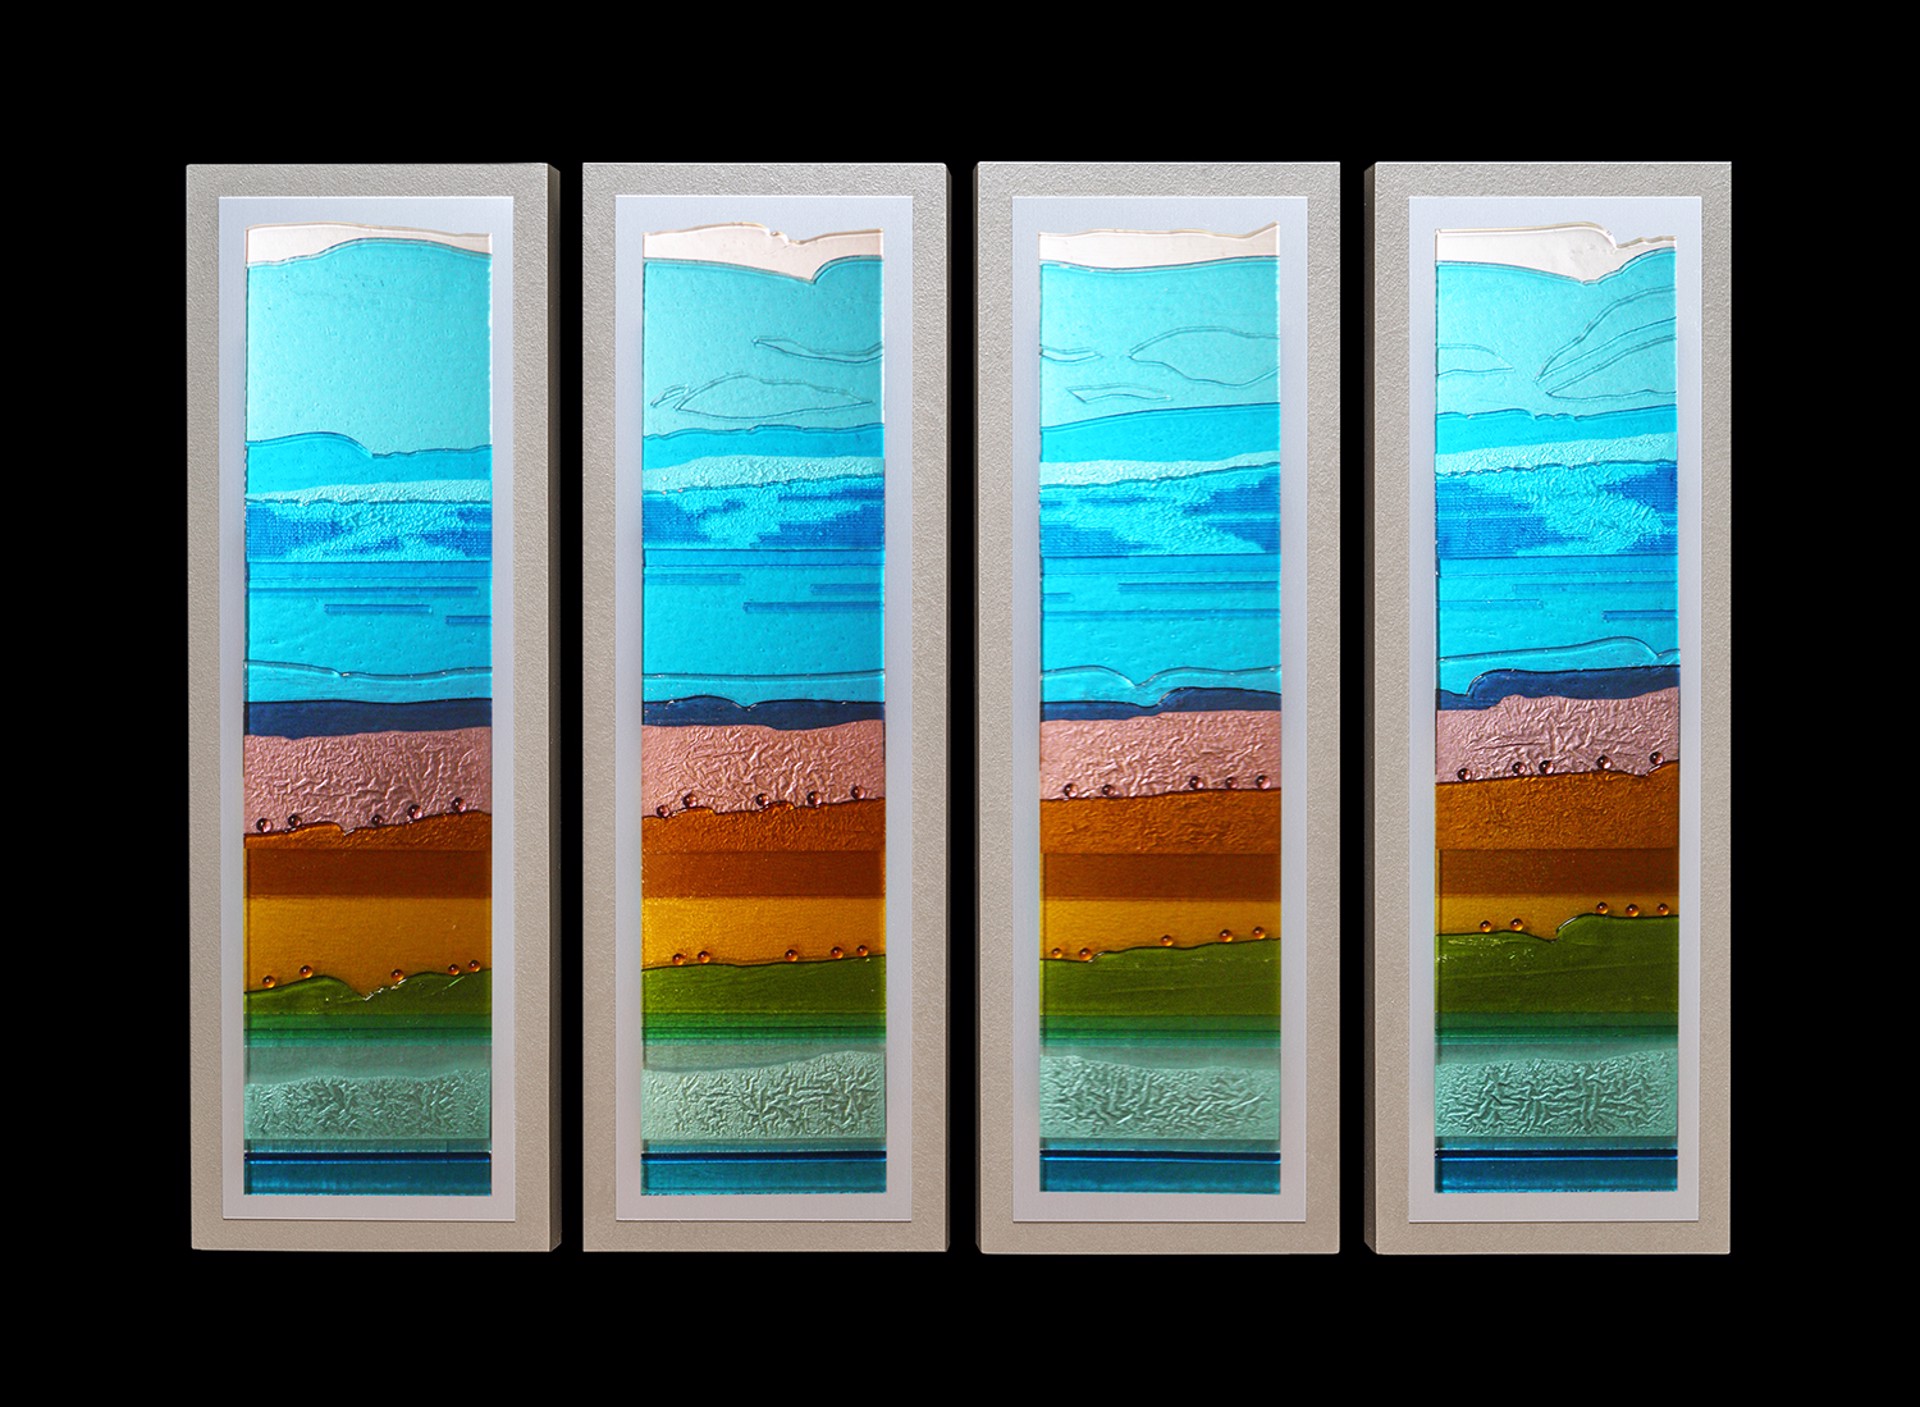 On The Horizon - 4 pieces by Doug Gillis